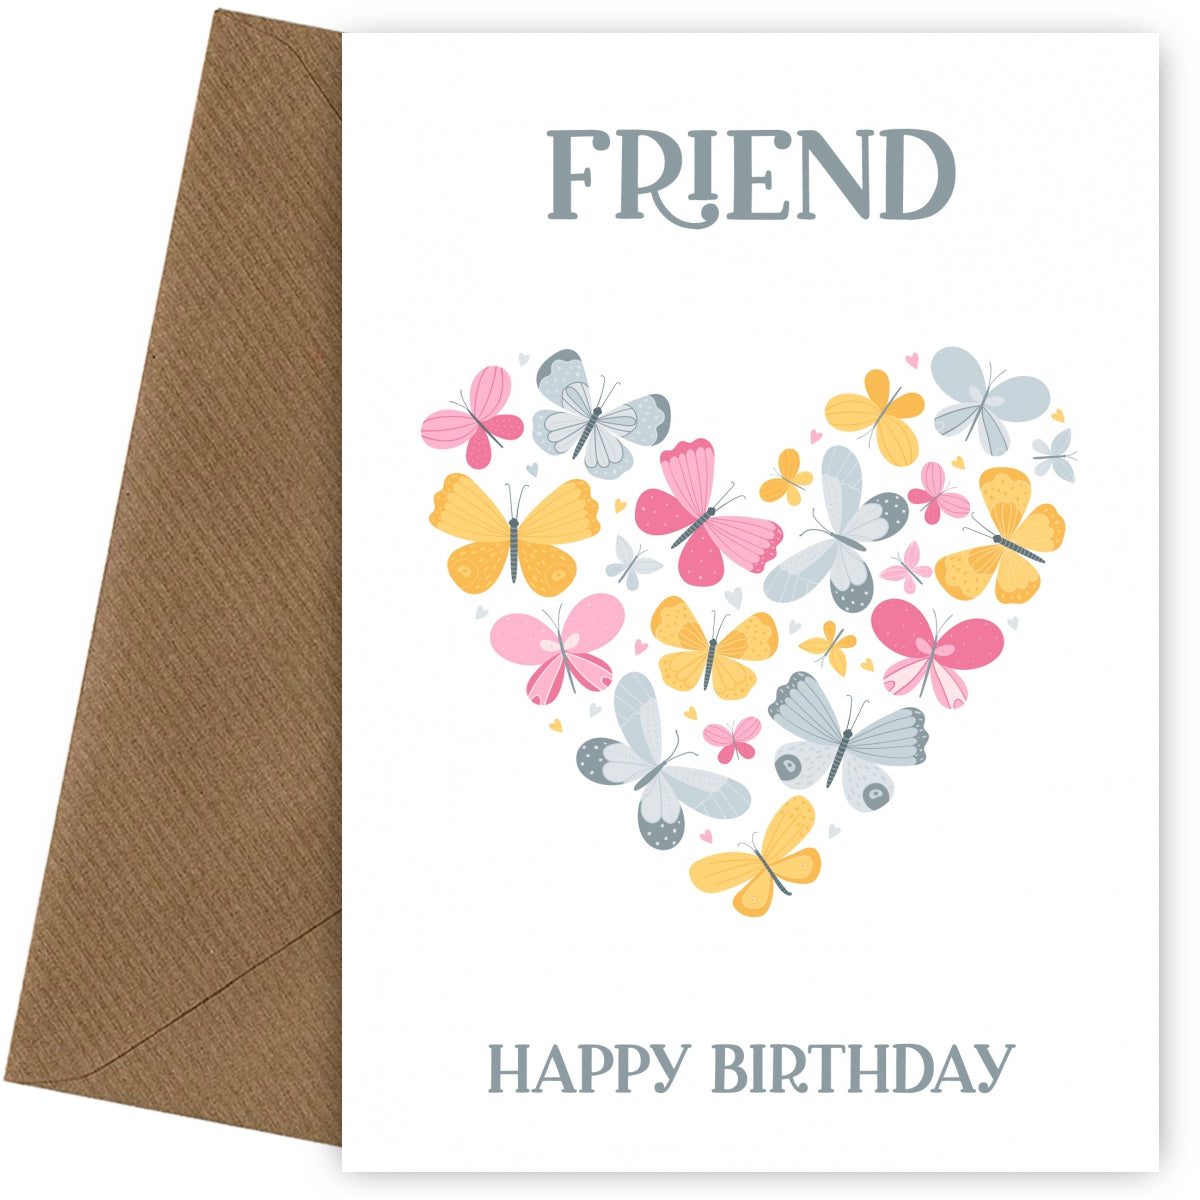 Friend Birthday Card - Butterfly Heart